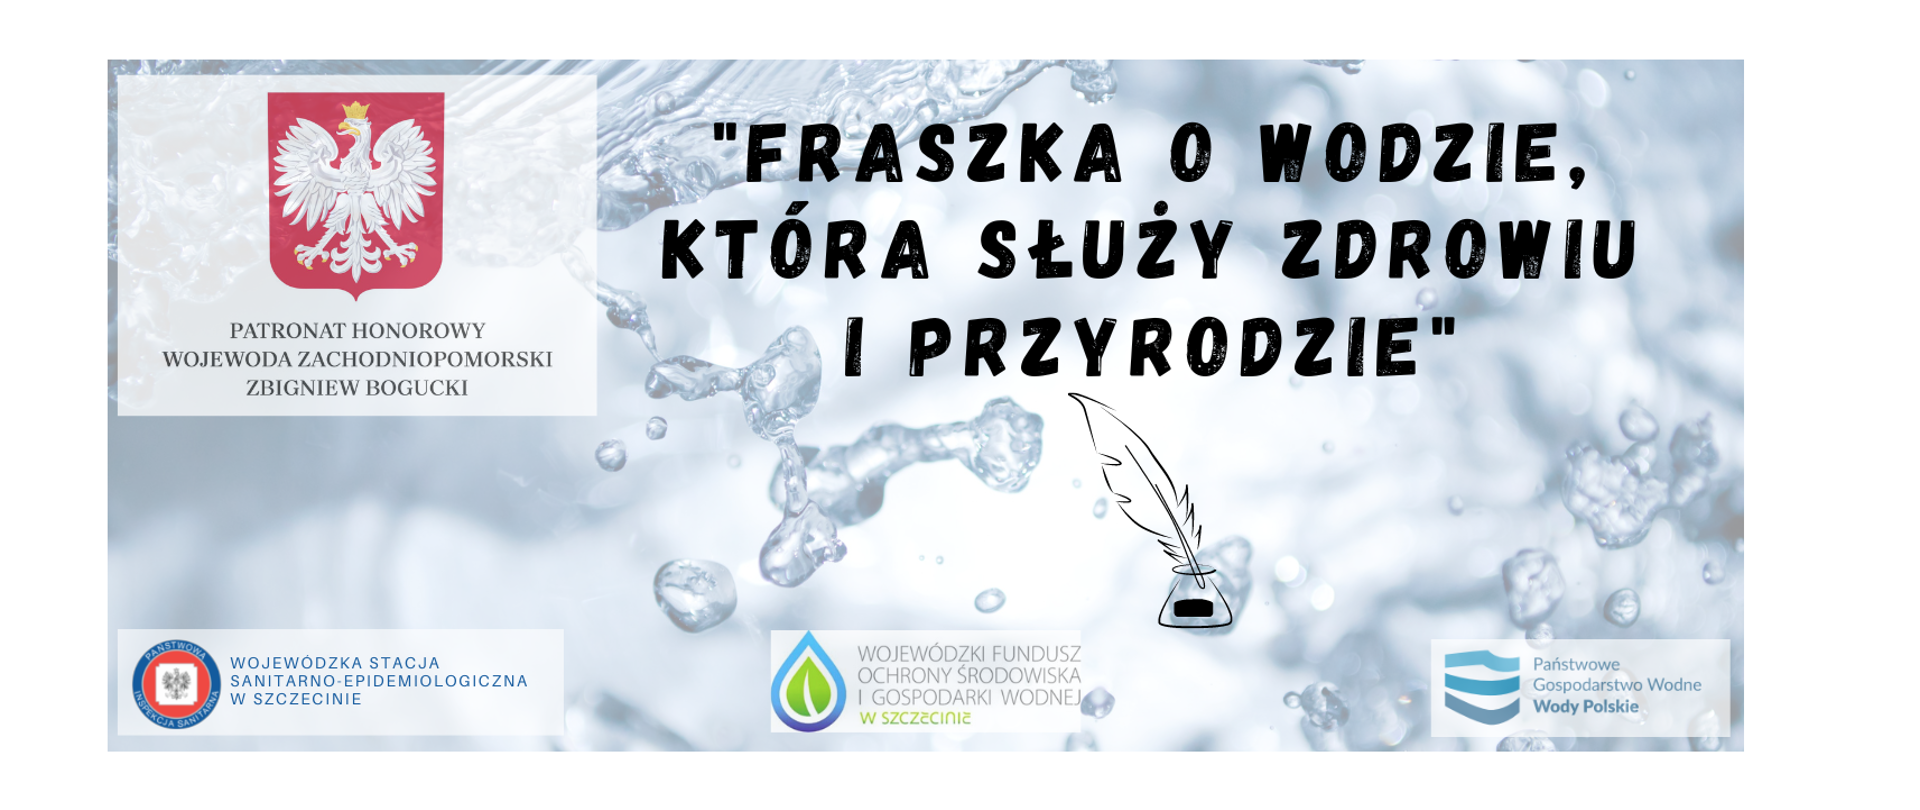 Obraz przedstawia hasło konkursu "Fraszka o wodzie, która służy zdrowiu i przyrodzie" oraz logo patronów honorowych i organizatorów przedsięwzięcia